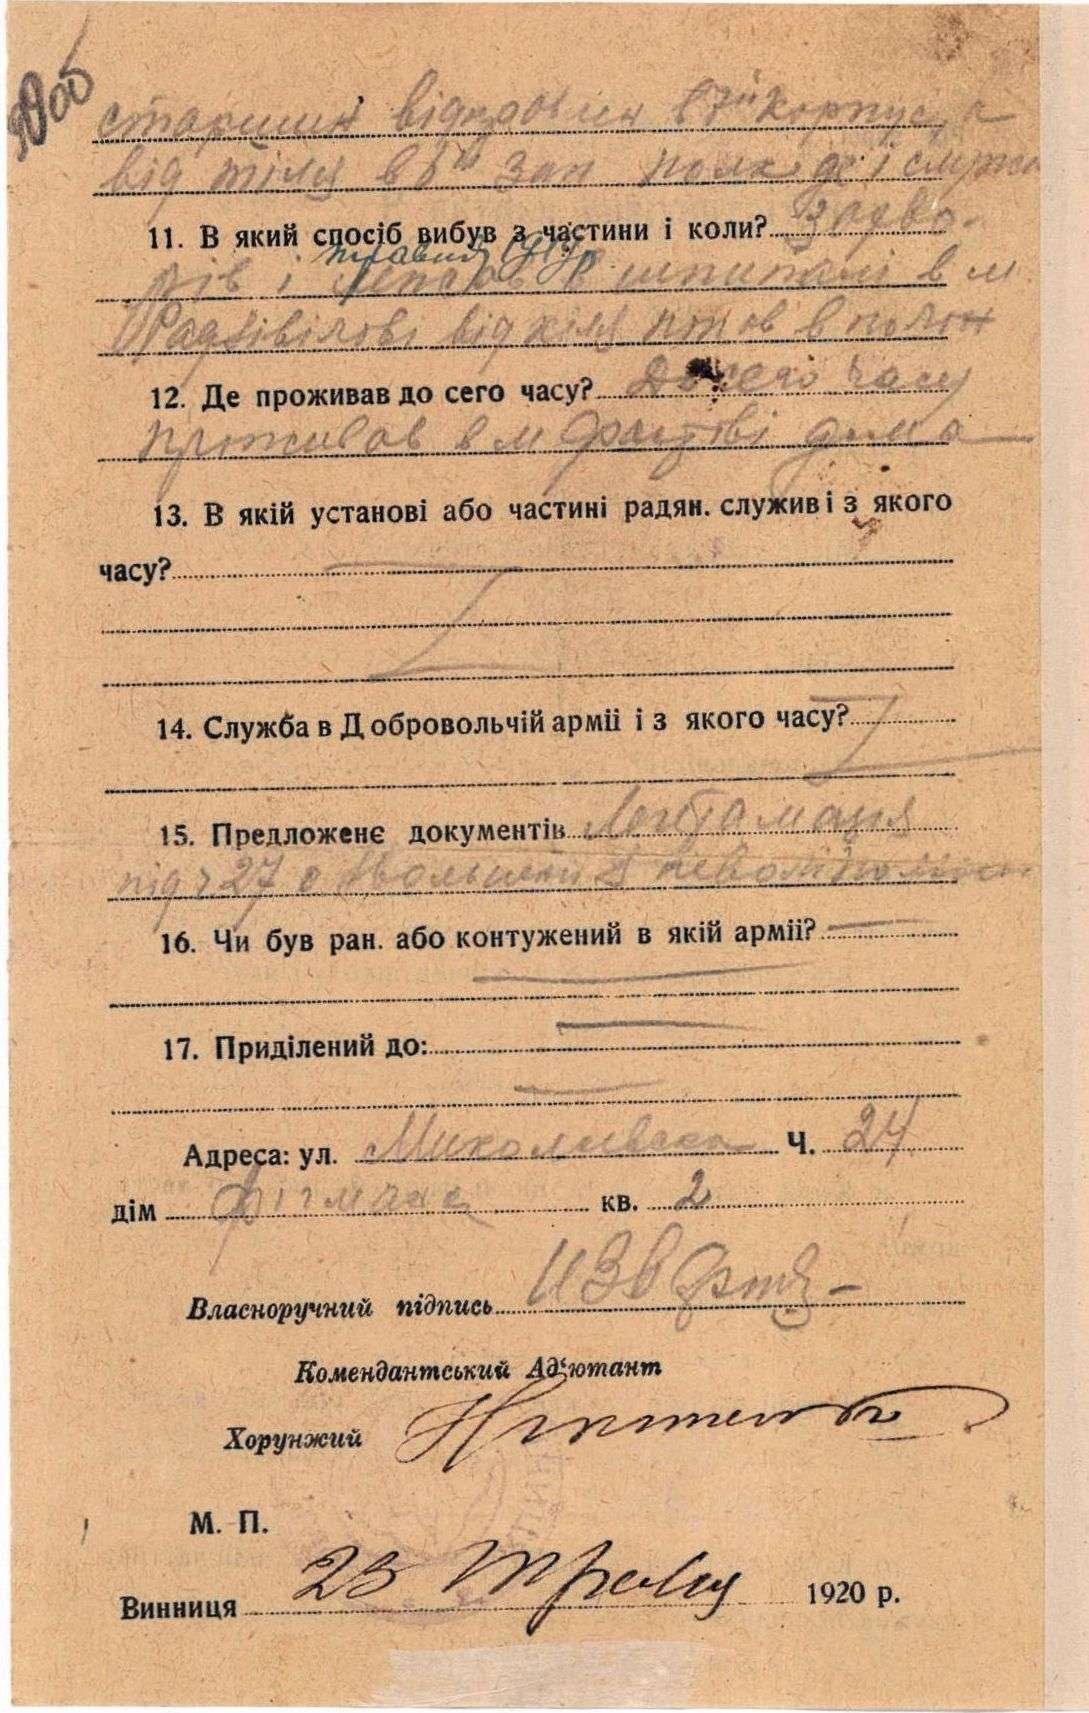 Реєстраційна картка військового. 23 травня 1920 р. (м. Вінниця).